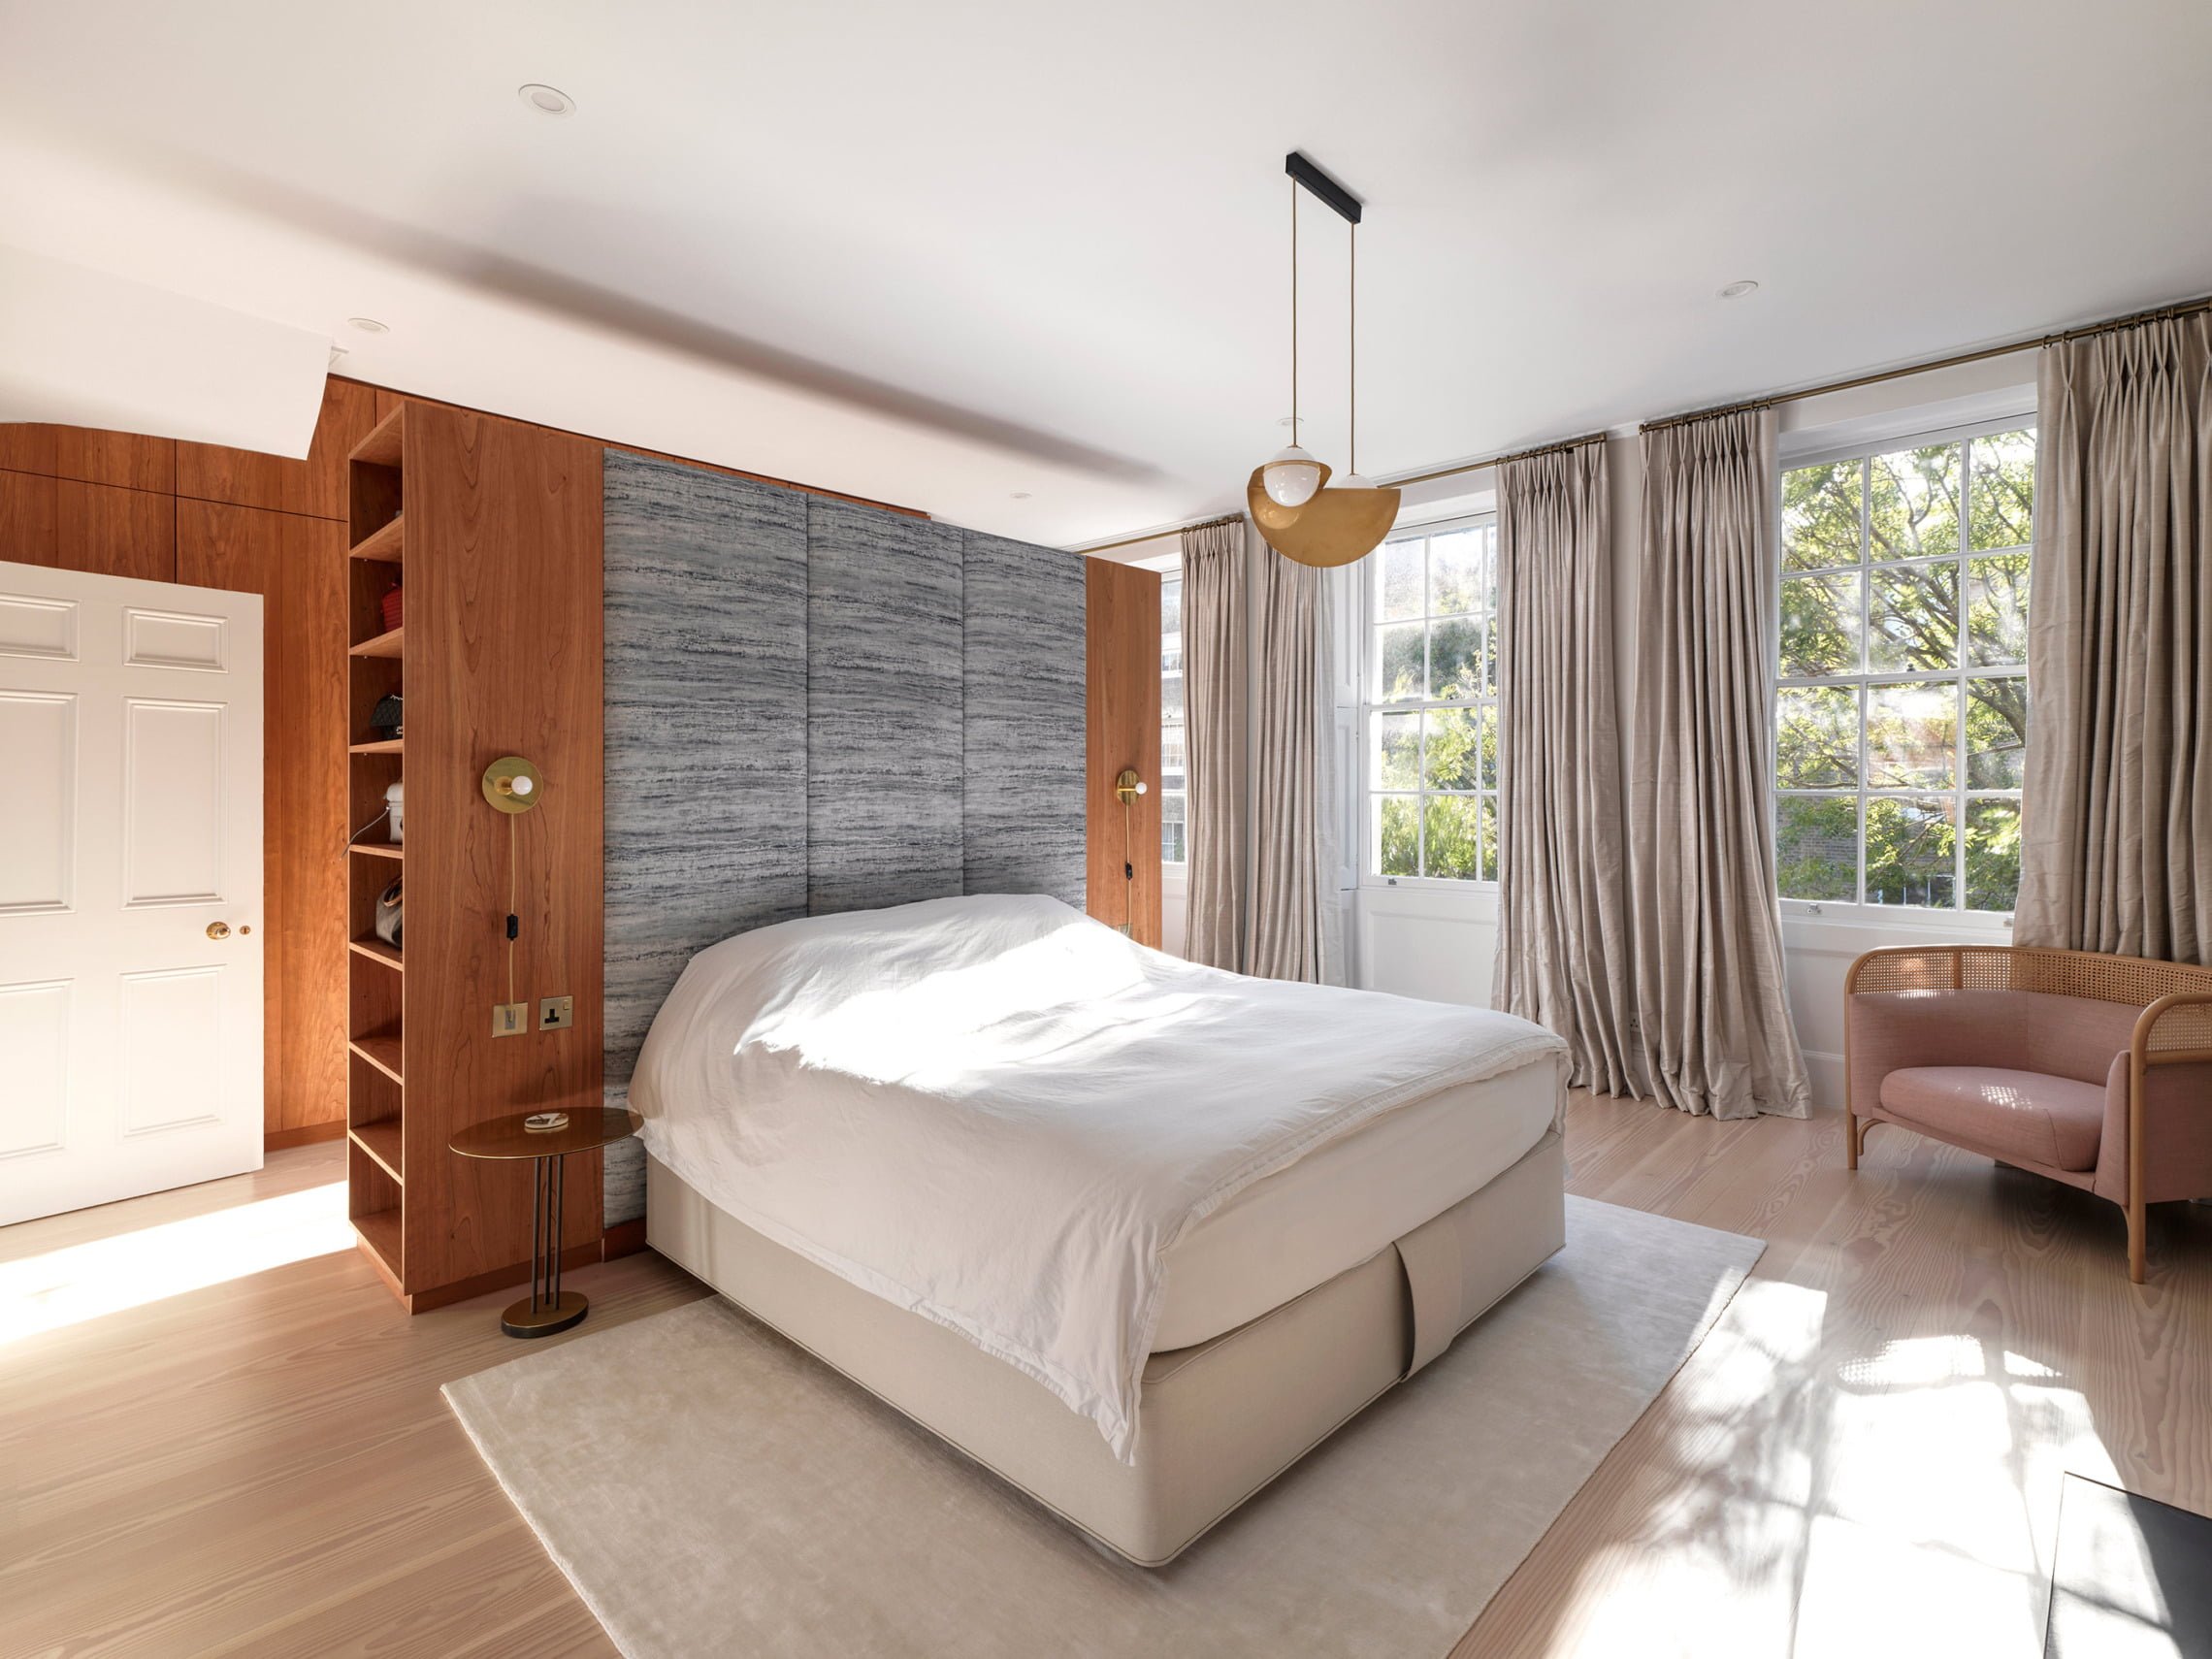 Double Linen Douglas Fir engineered flooring in bedroom